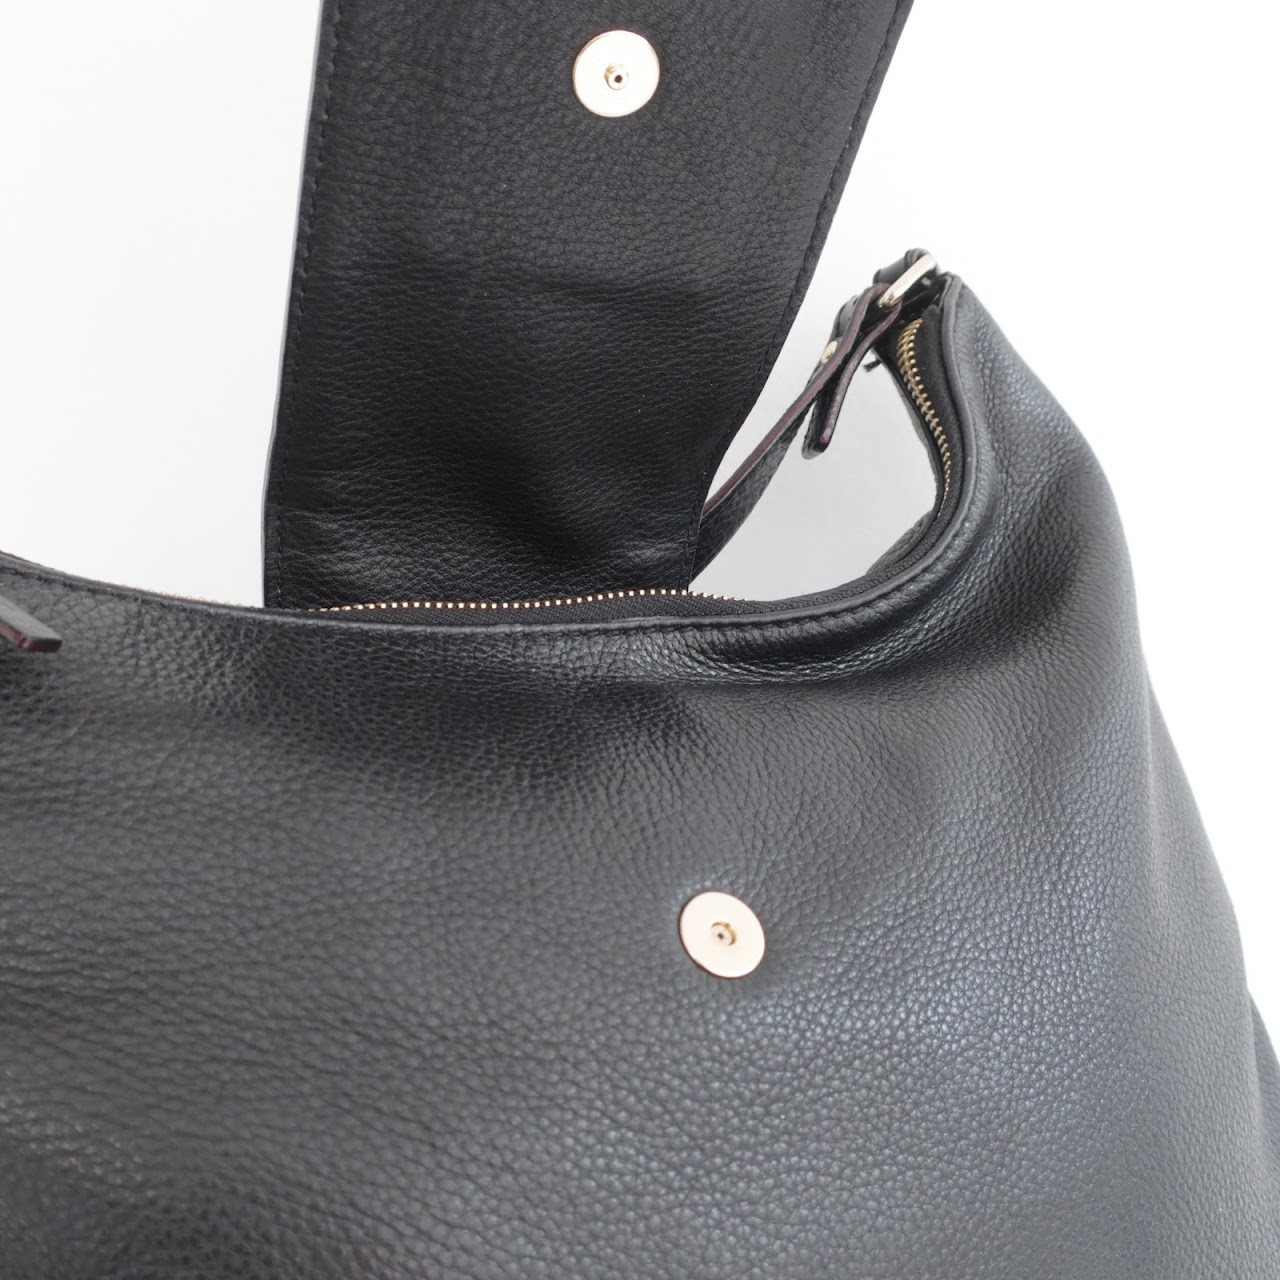 Kate Spade Black Leather Shoulder Bag